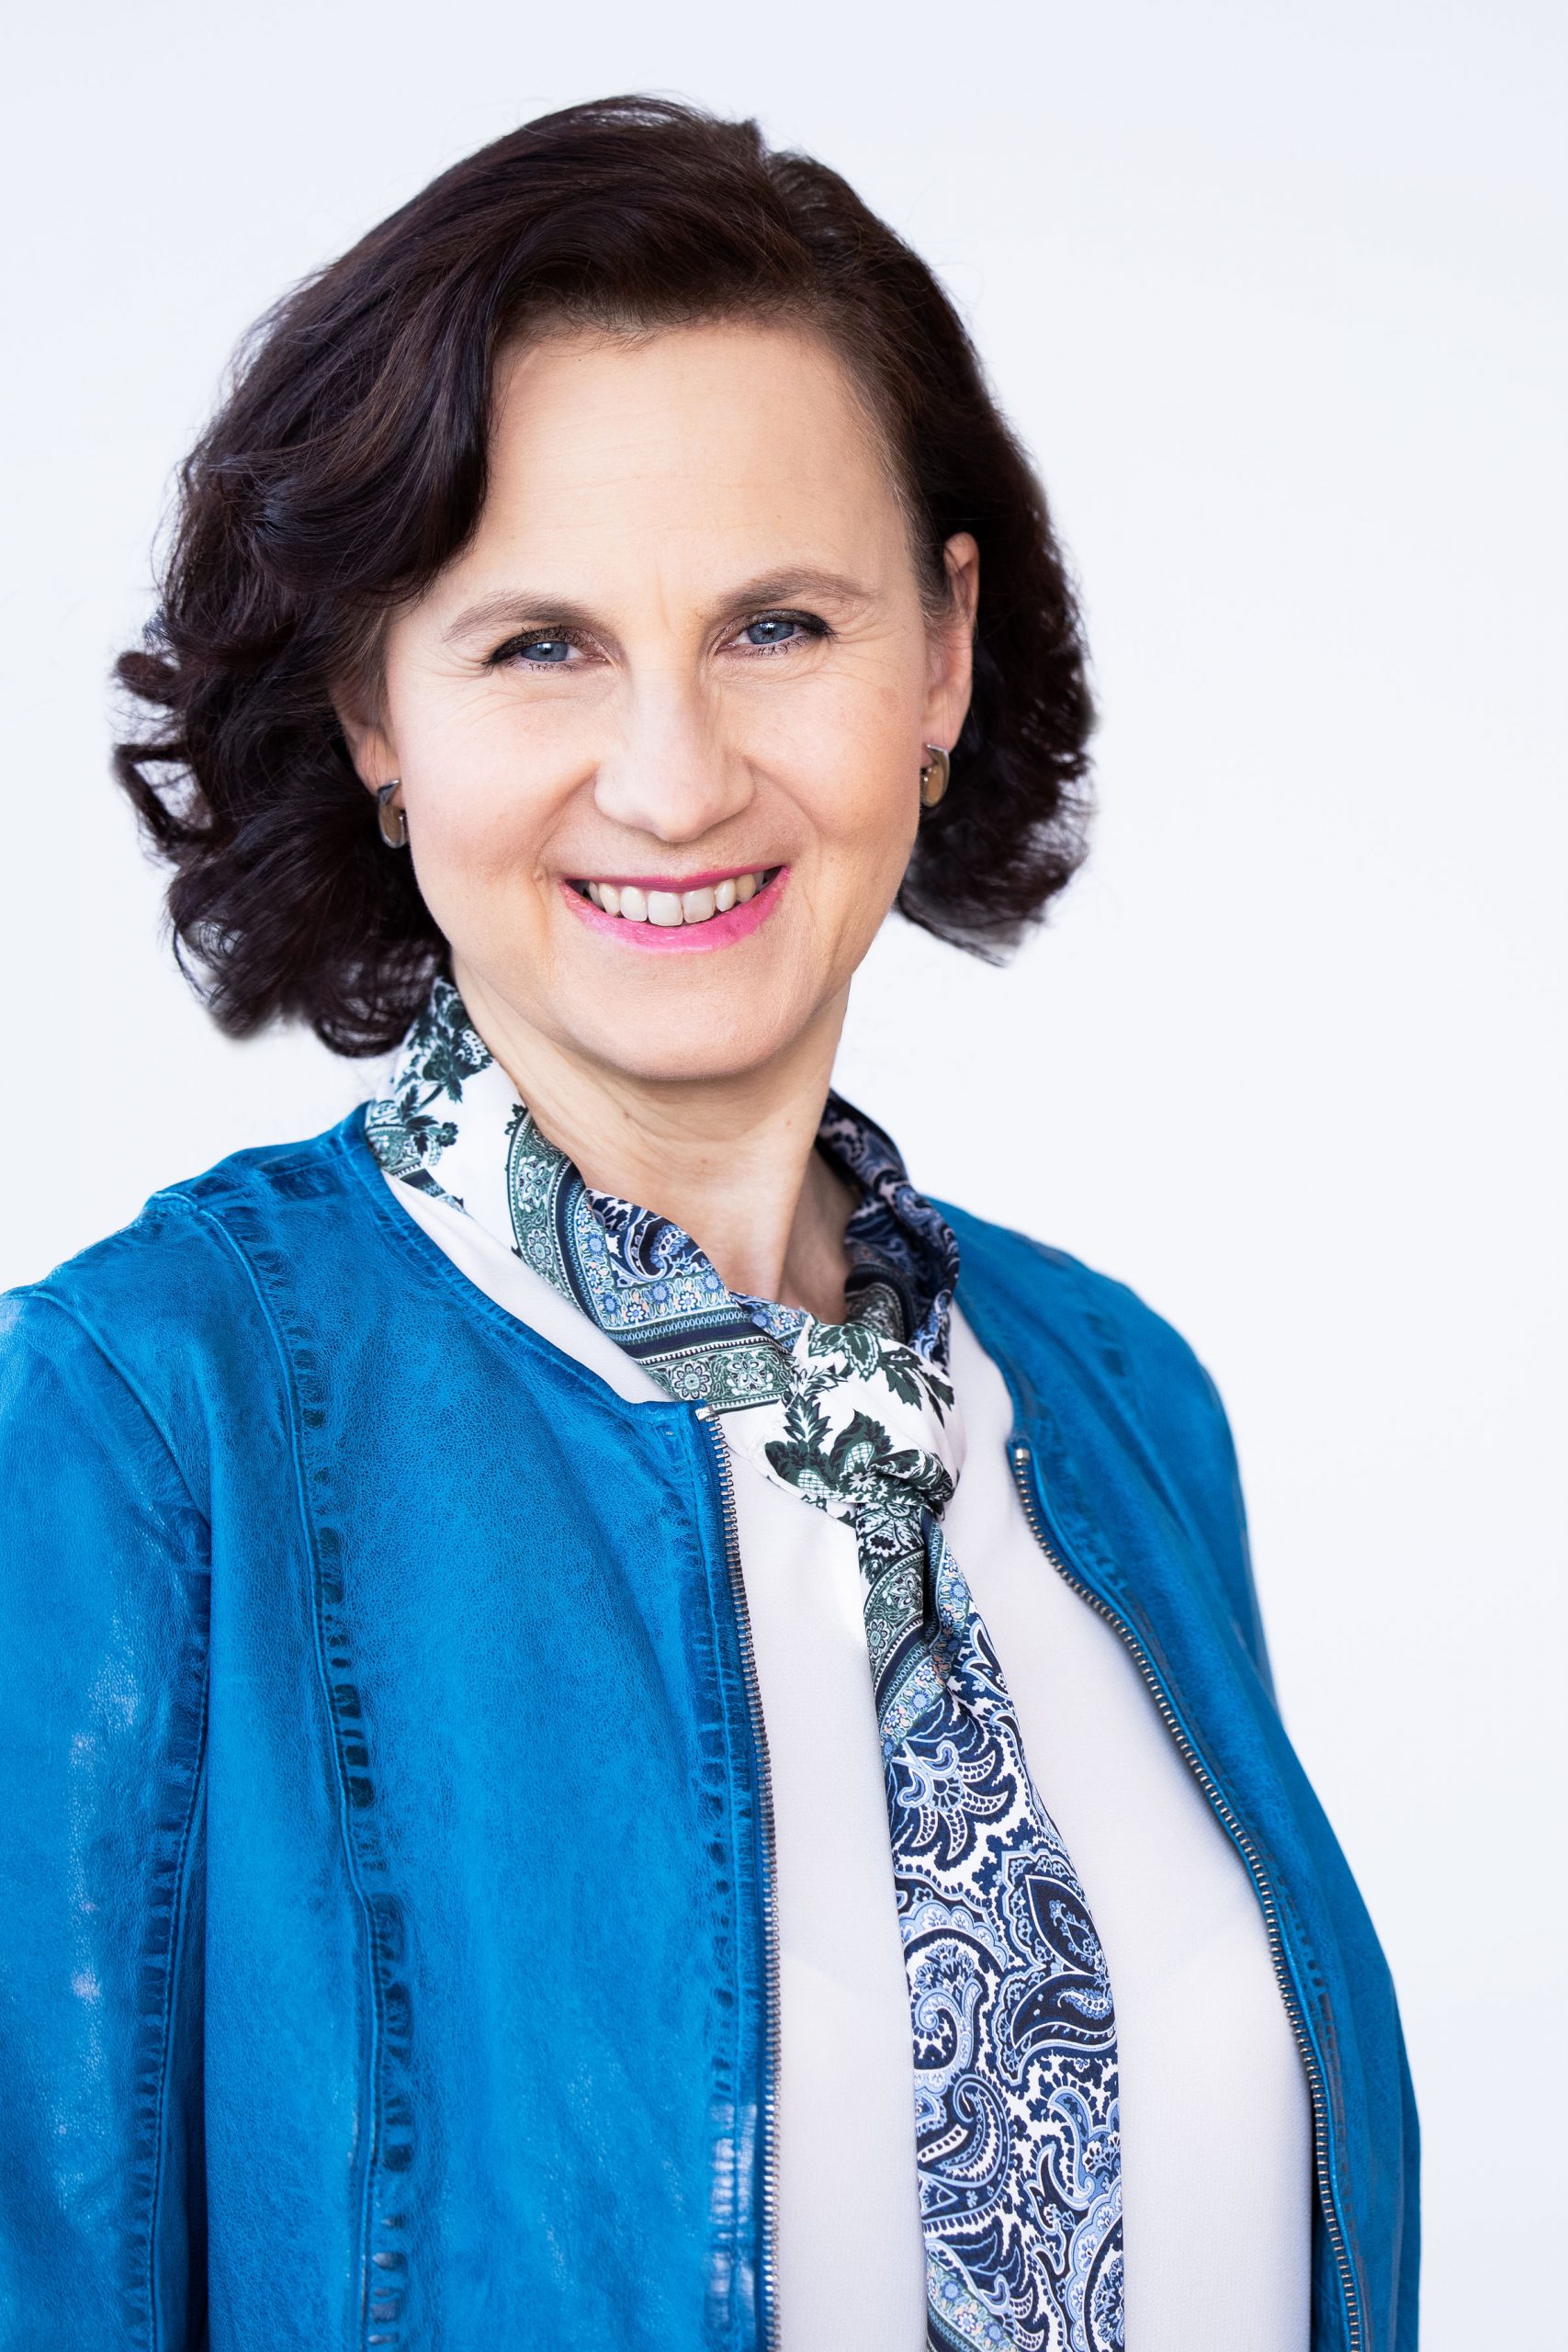 Karin Wiesinger neue Präsidentin des PRVA